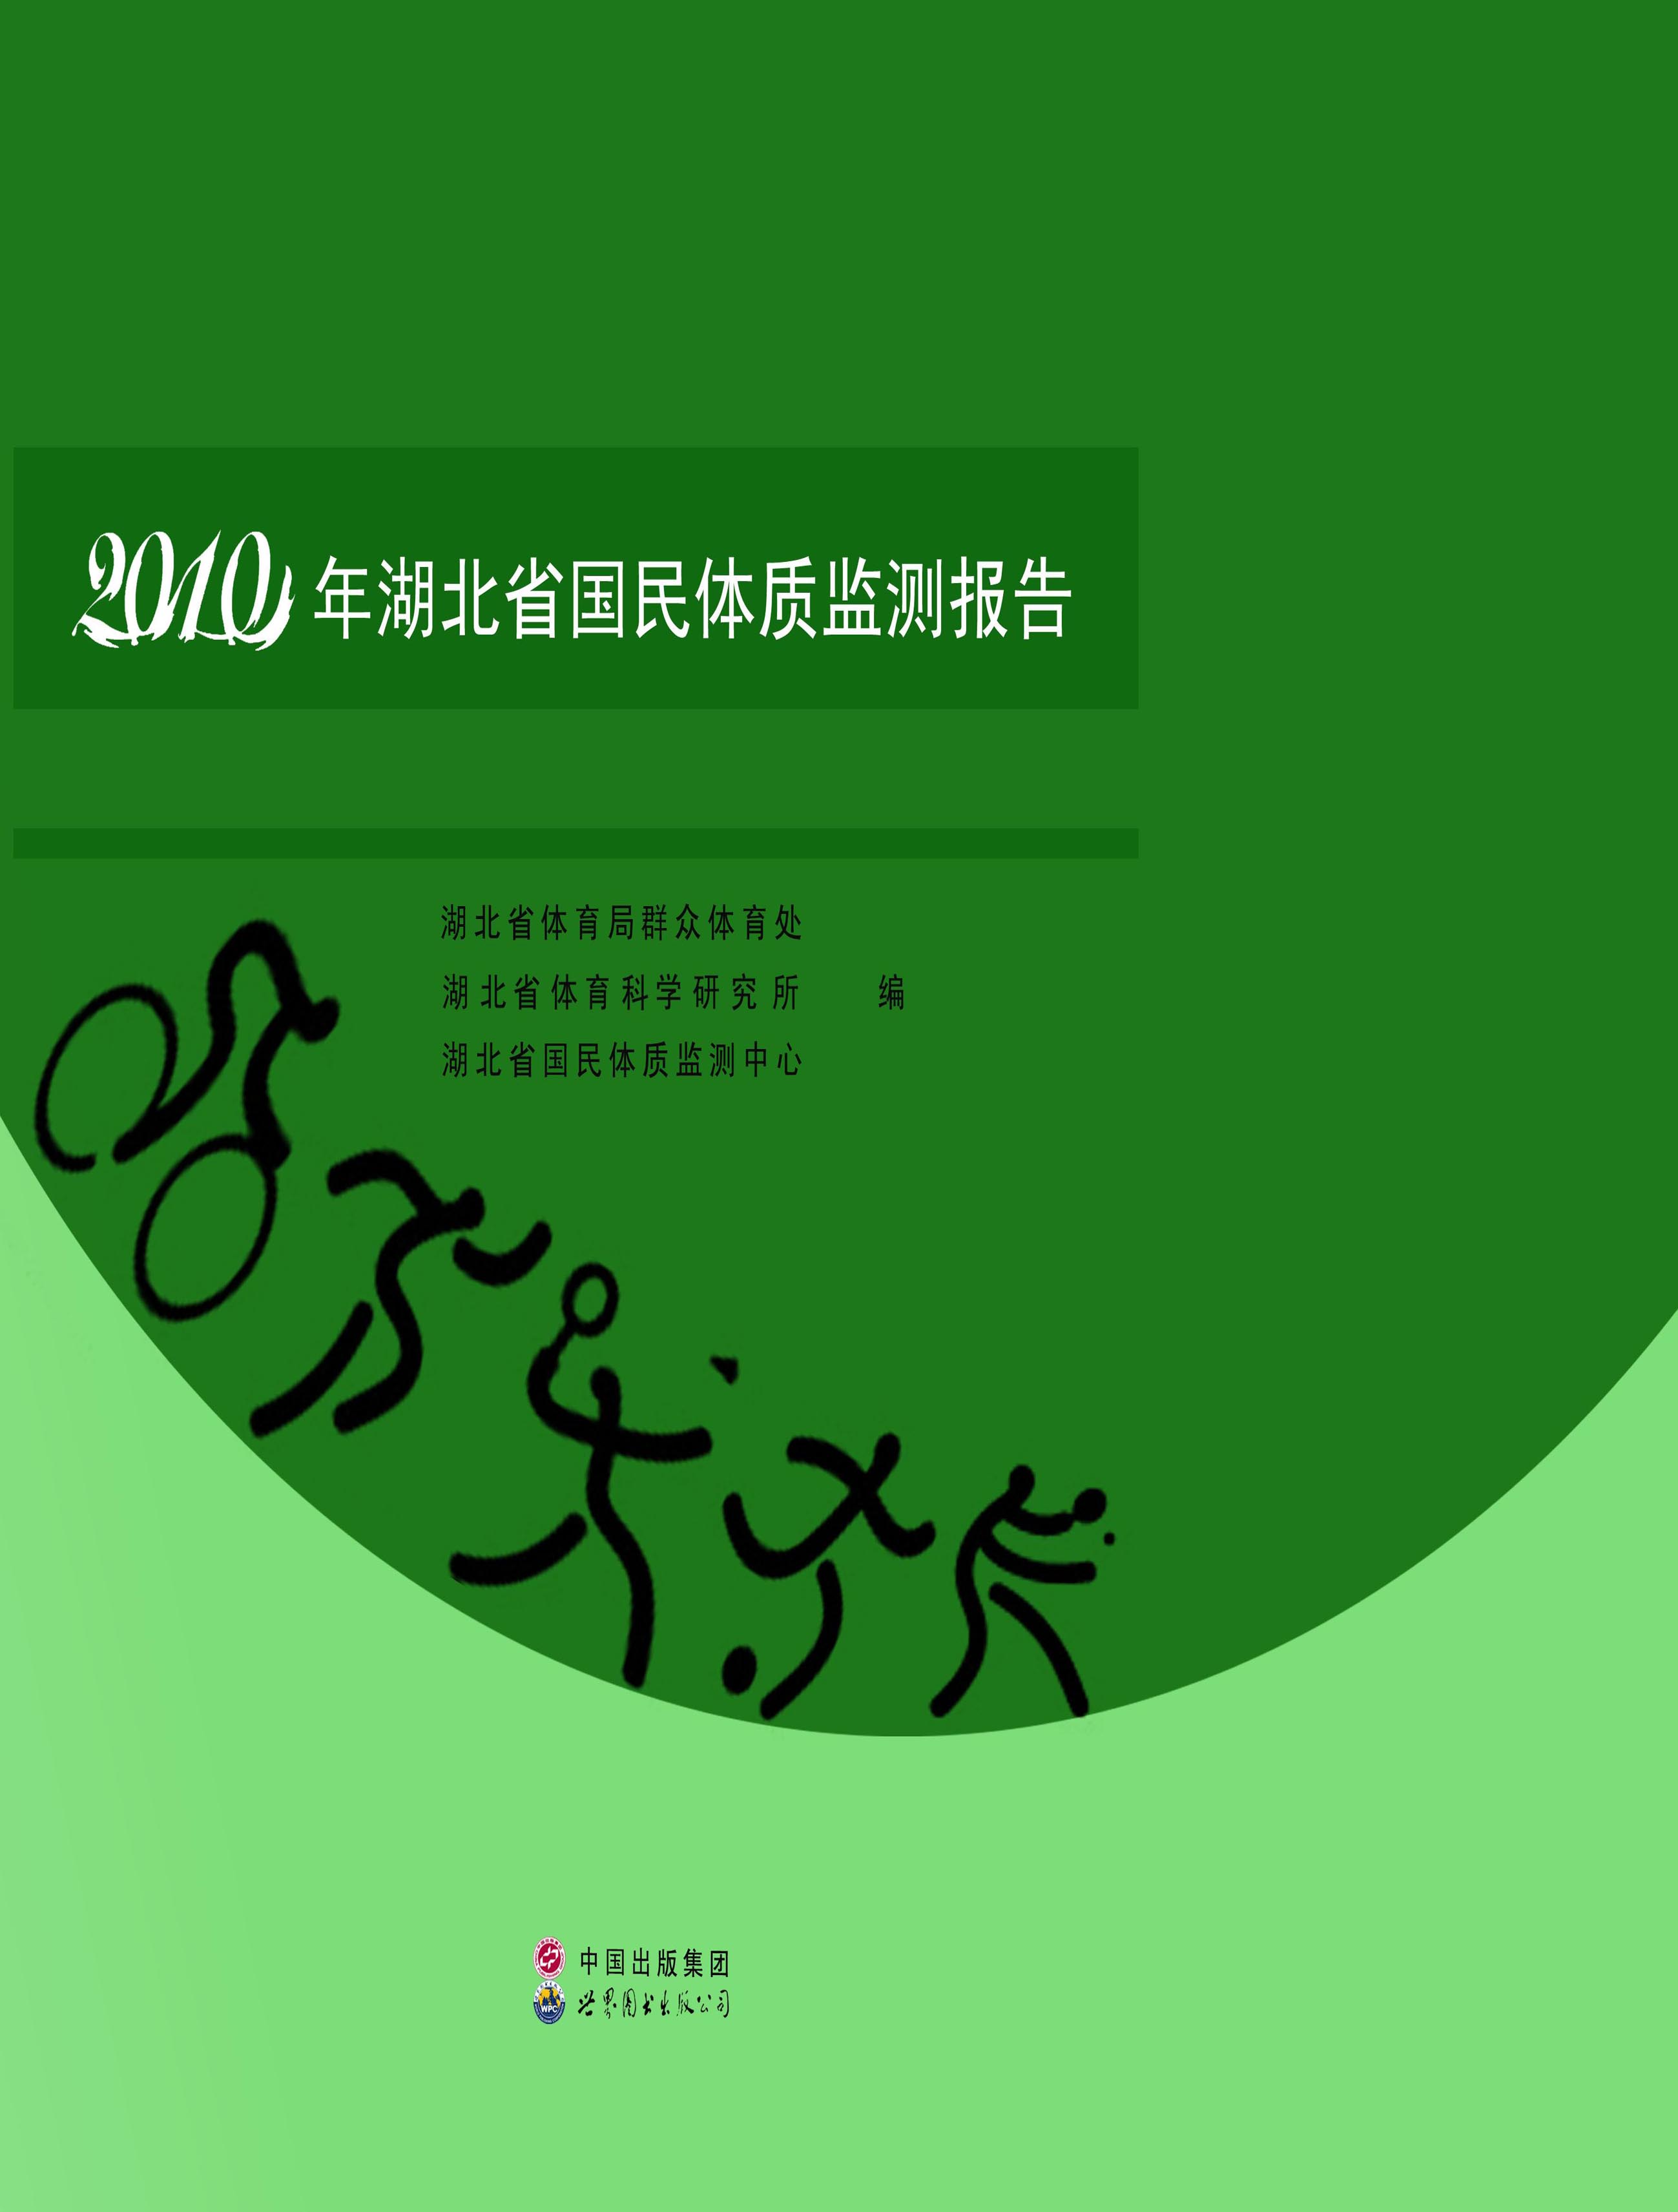 2010年湖北省国民体质监测报告